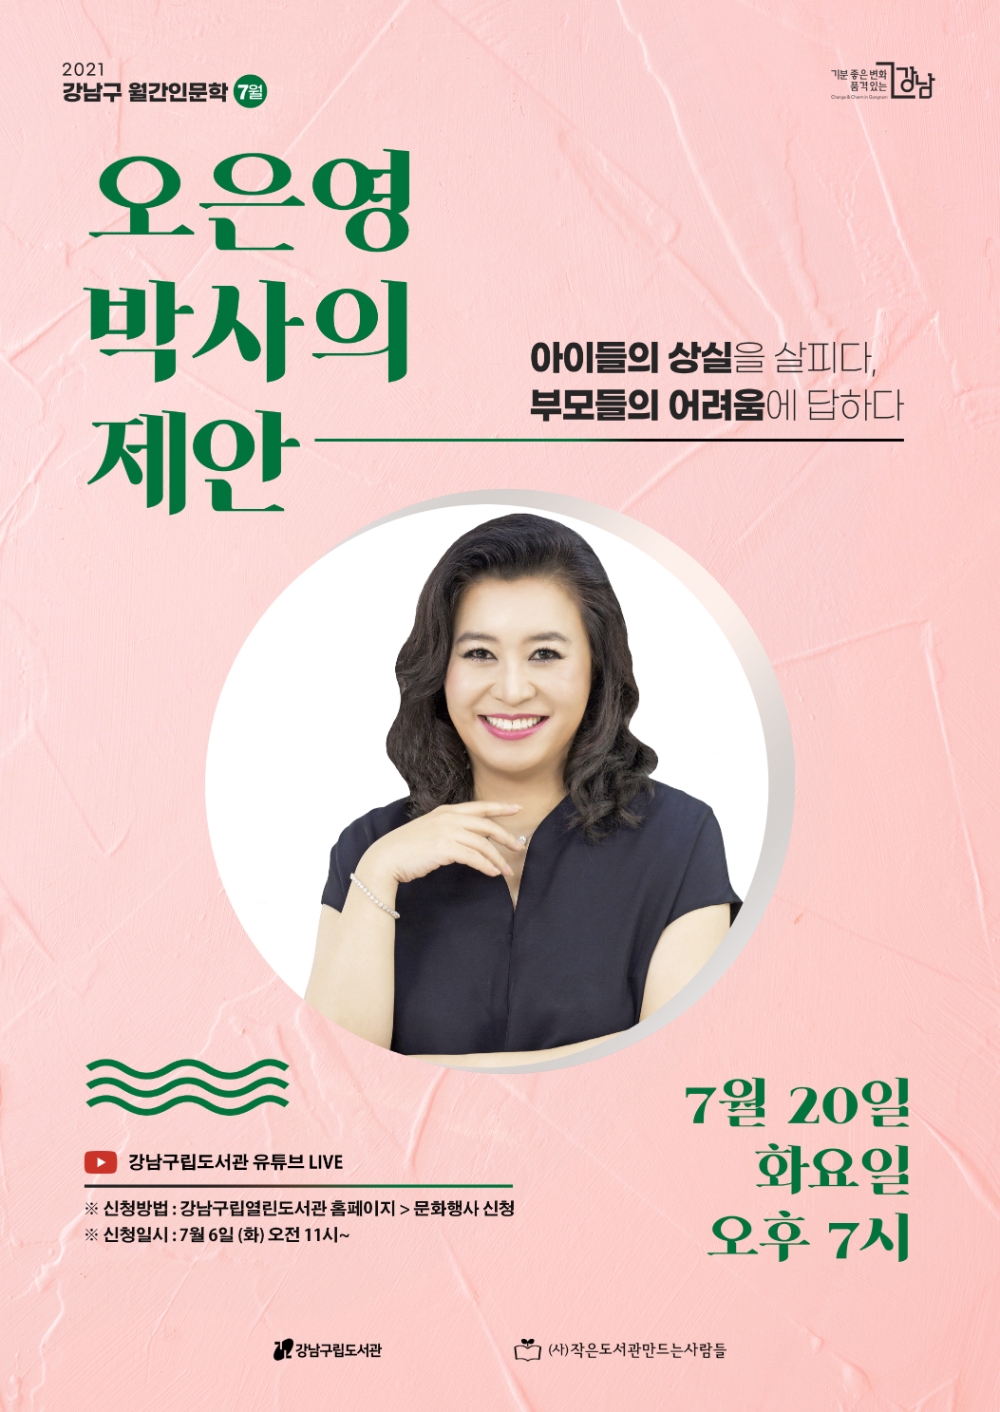 강남구, ‘국민 육아멘토’ 오은영 박사 인문학 강연 개최